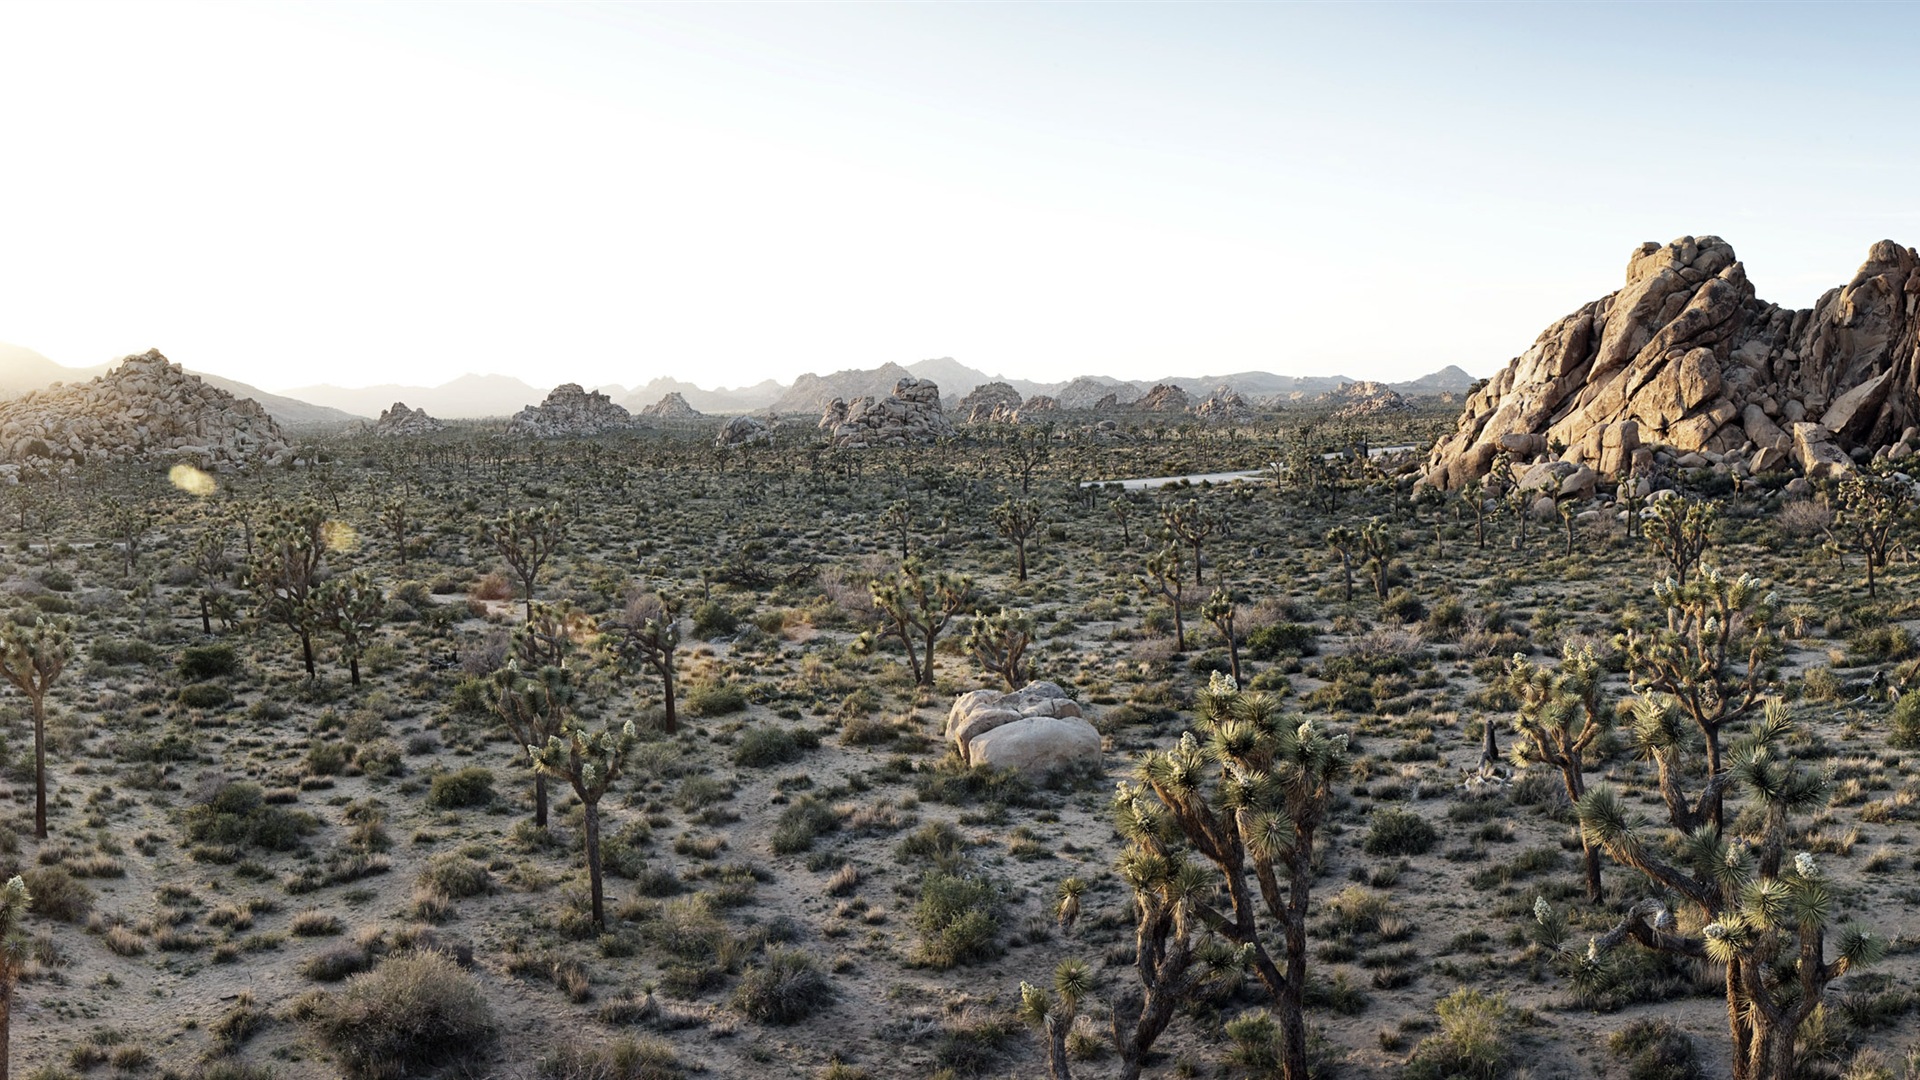 Les déserts chauds et arides, de Windows 8 fonds d'écran widescreen panoramique #9 - 1920x1080